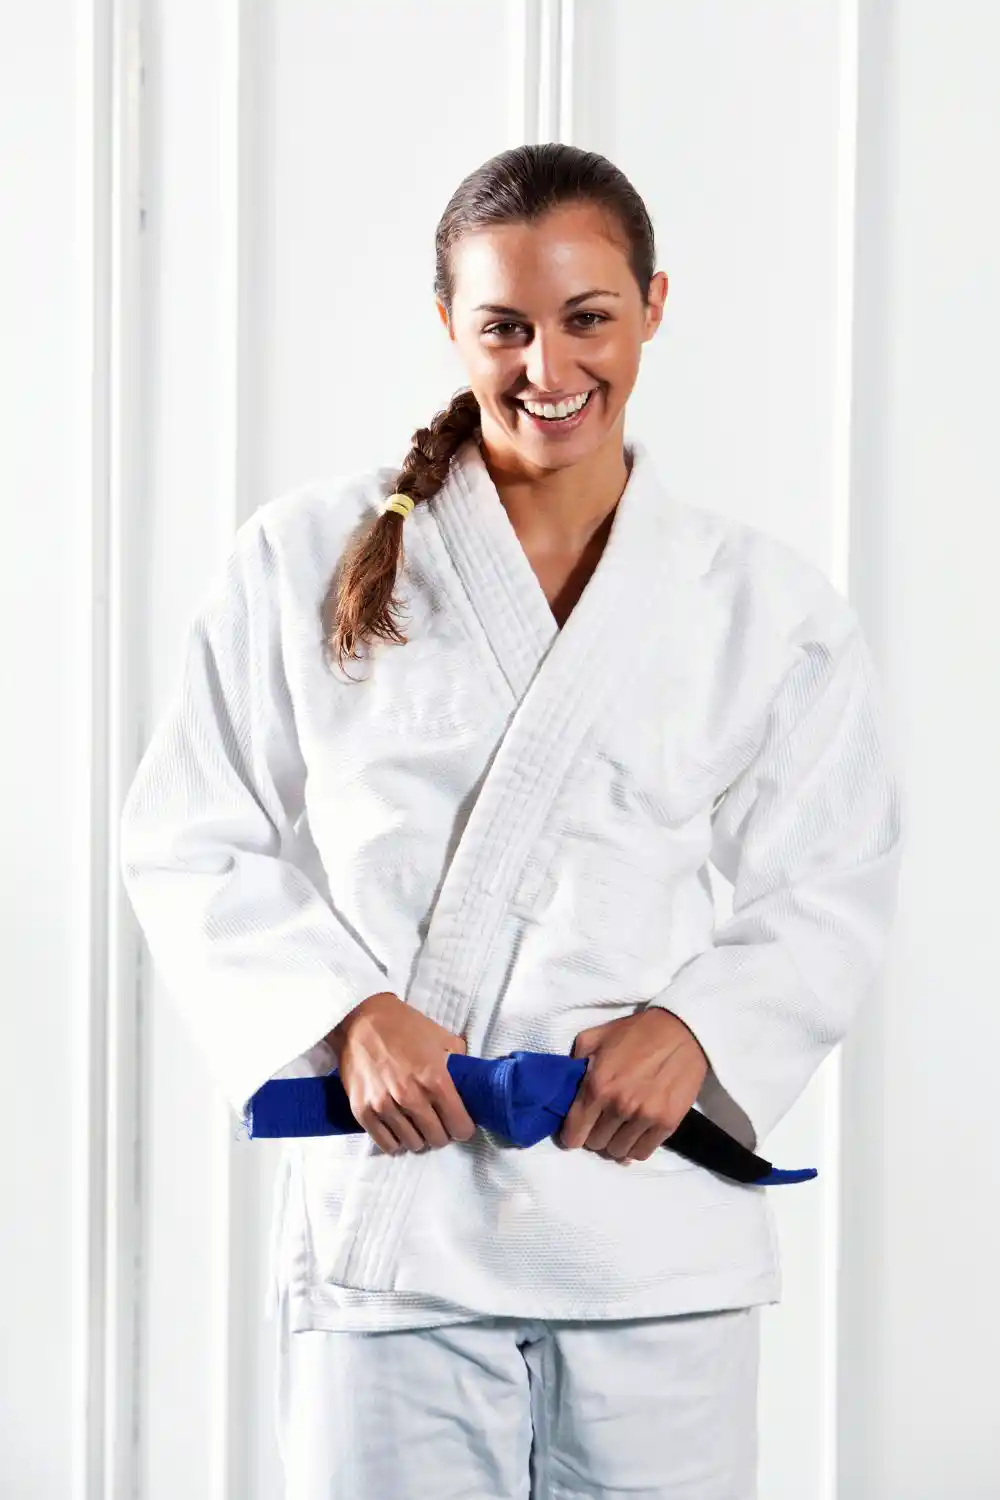 Jiu-Jitsu blue belt girl